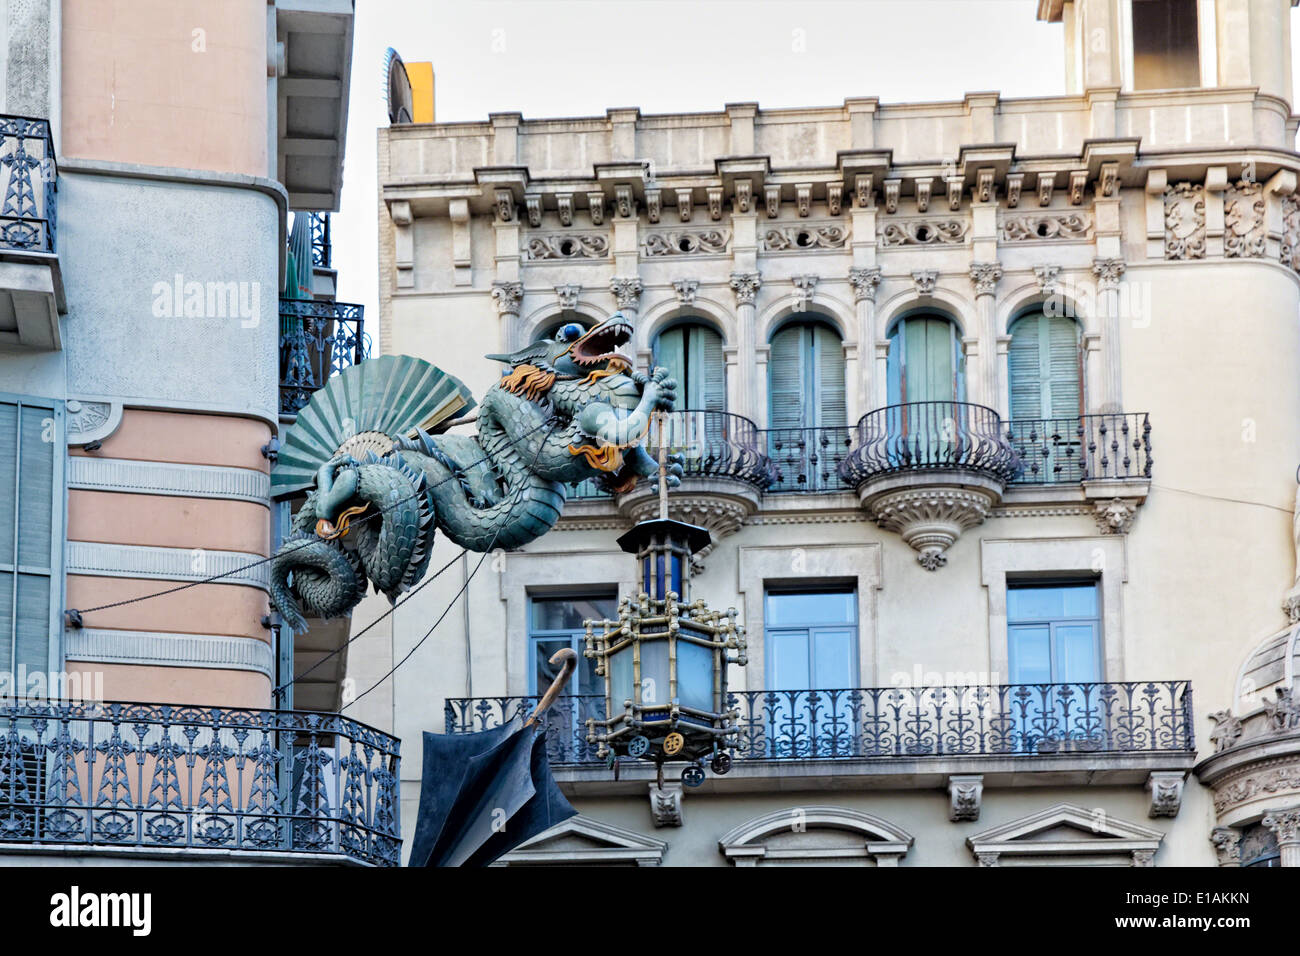 Dragón Chino escultura sobre las paredes de una casa decorada con sombrillas, Bruno Quadras Edificio, Las Ramblas, Barcelona Foto de stock